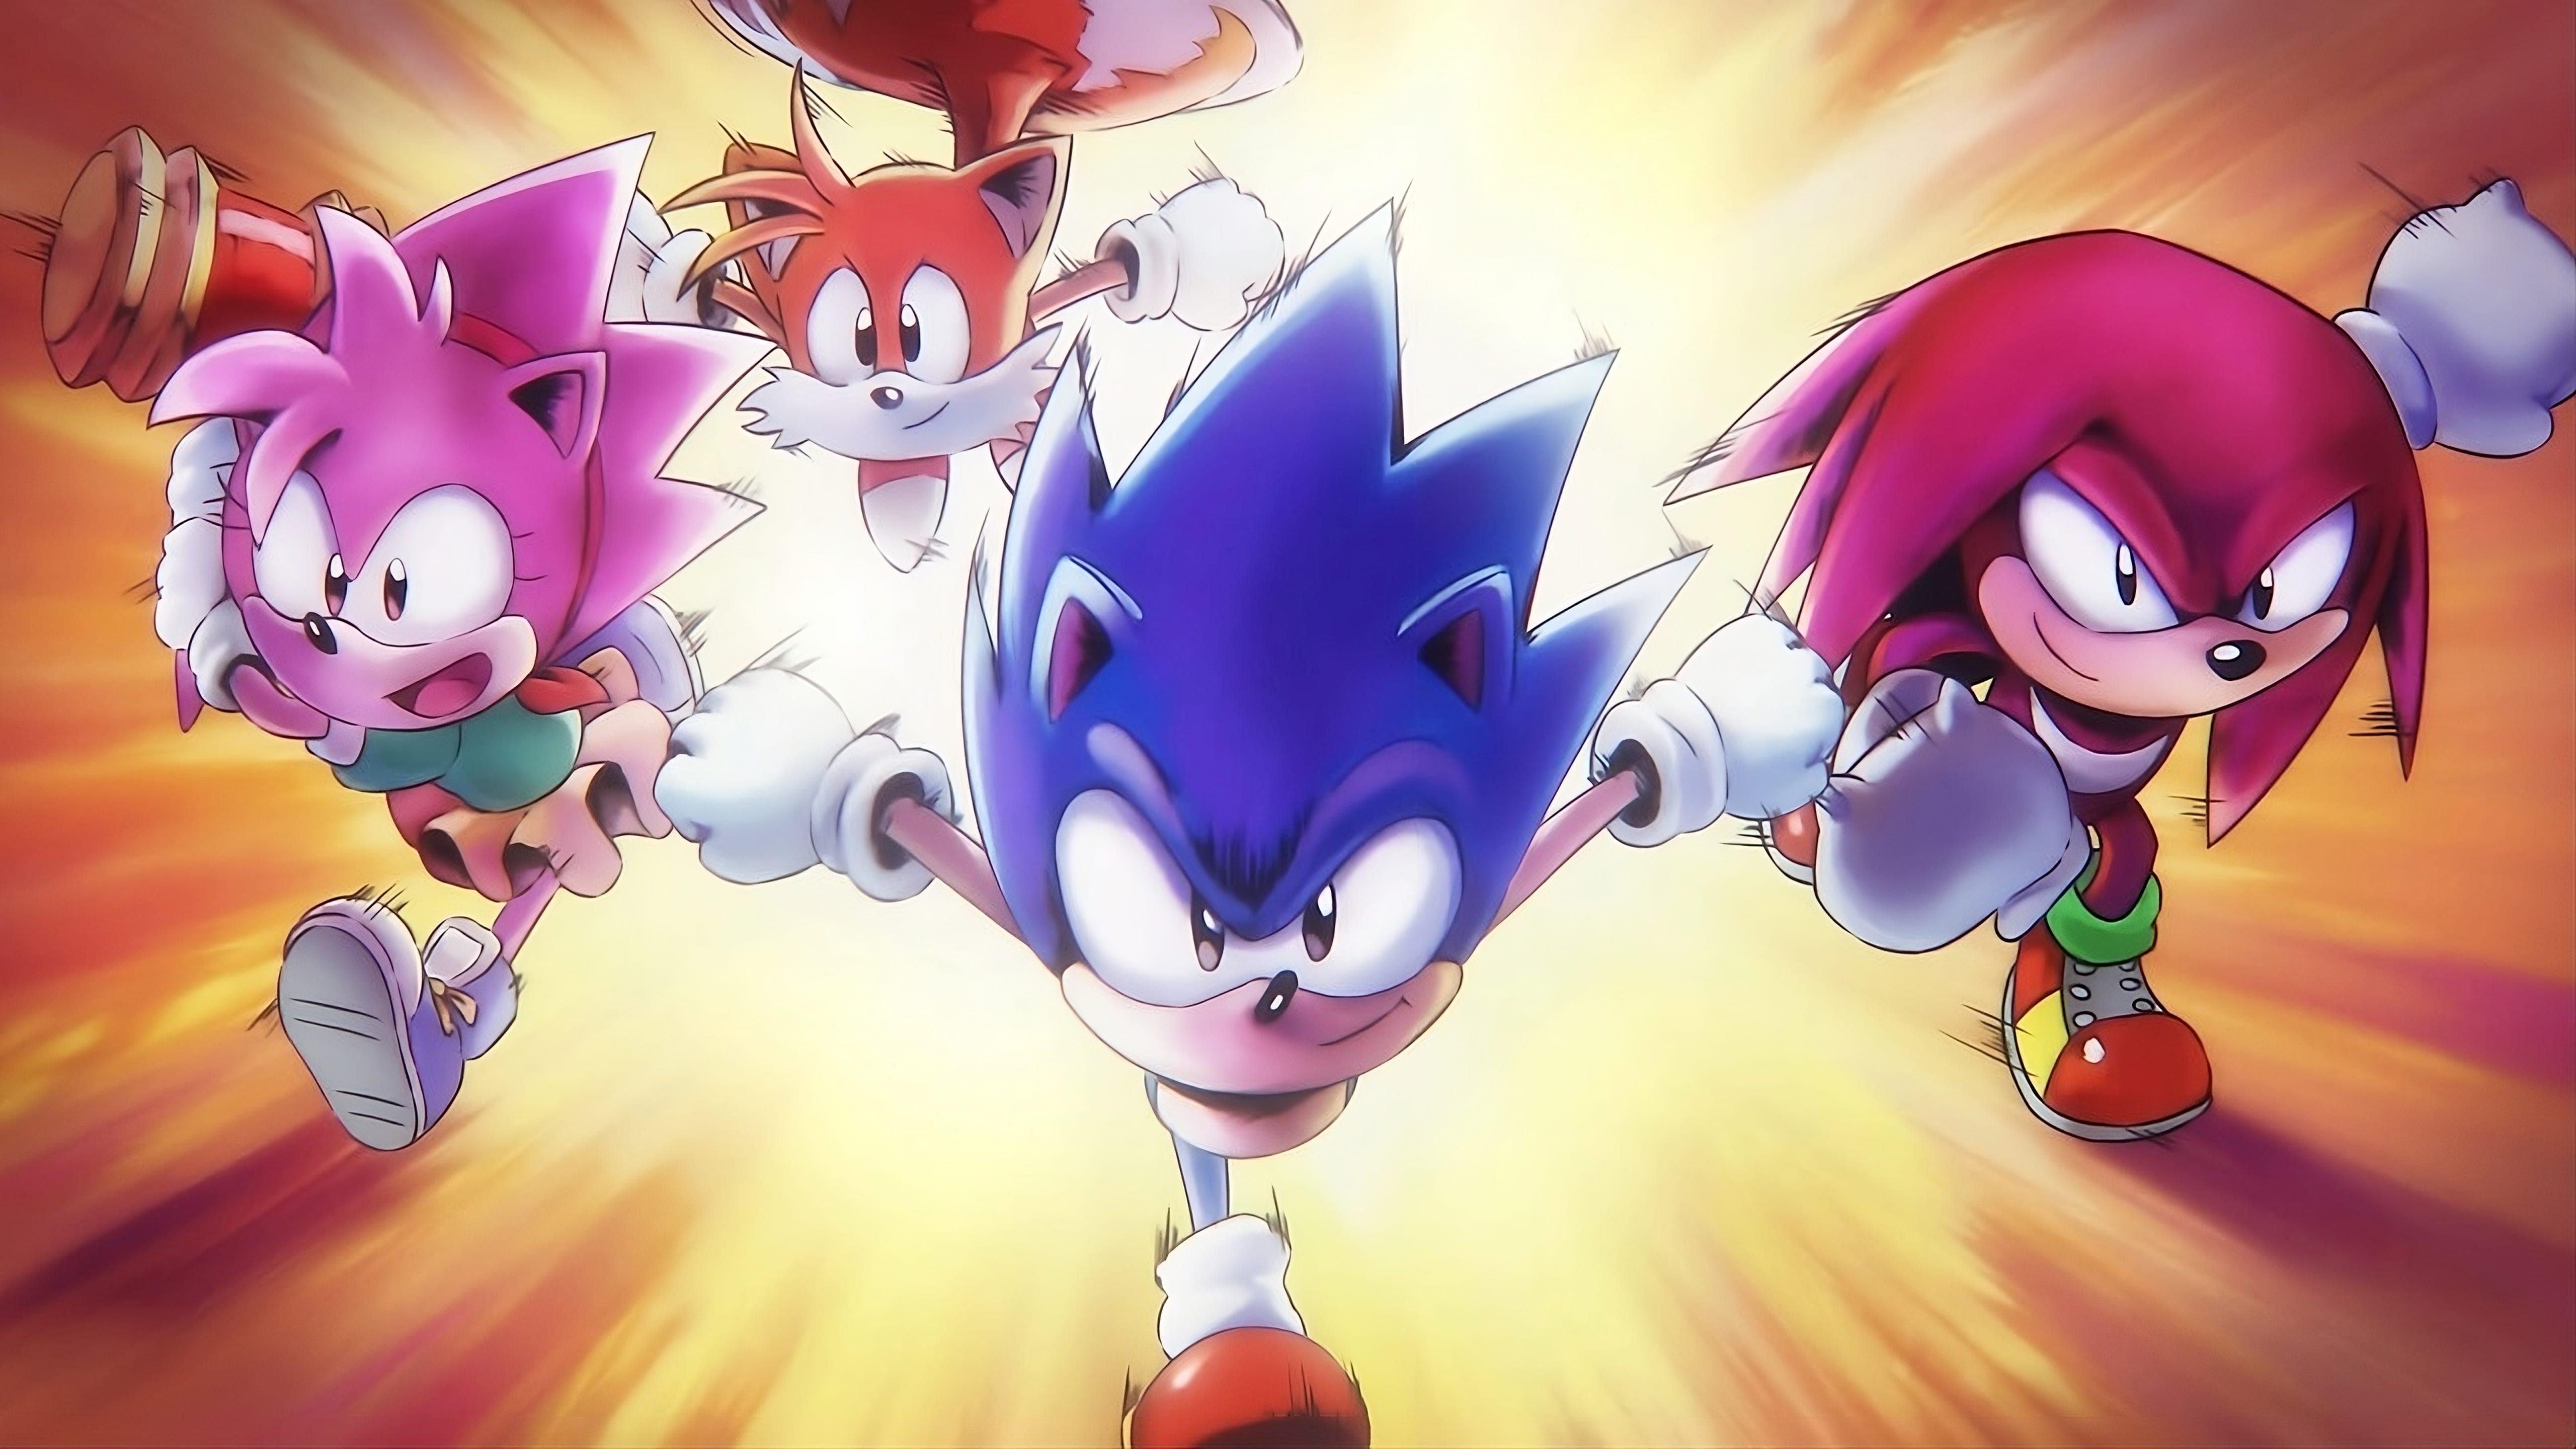 Sonic Superstars vai ter Online Battle Mode